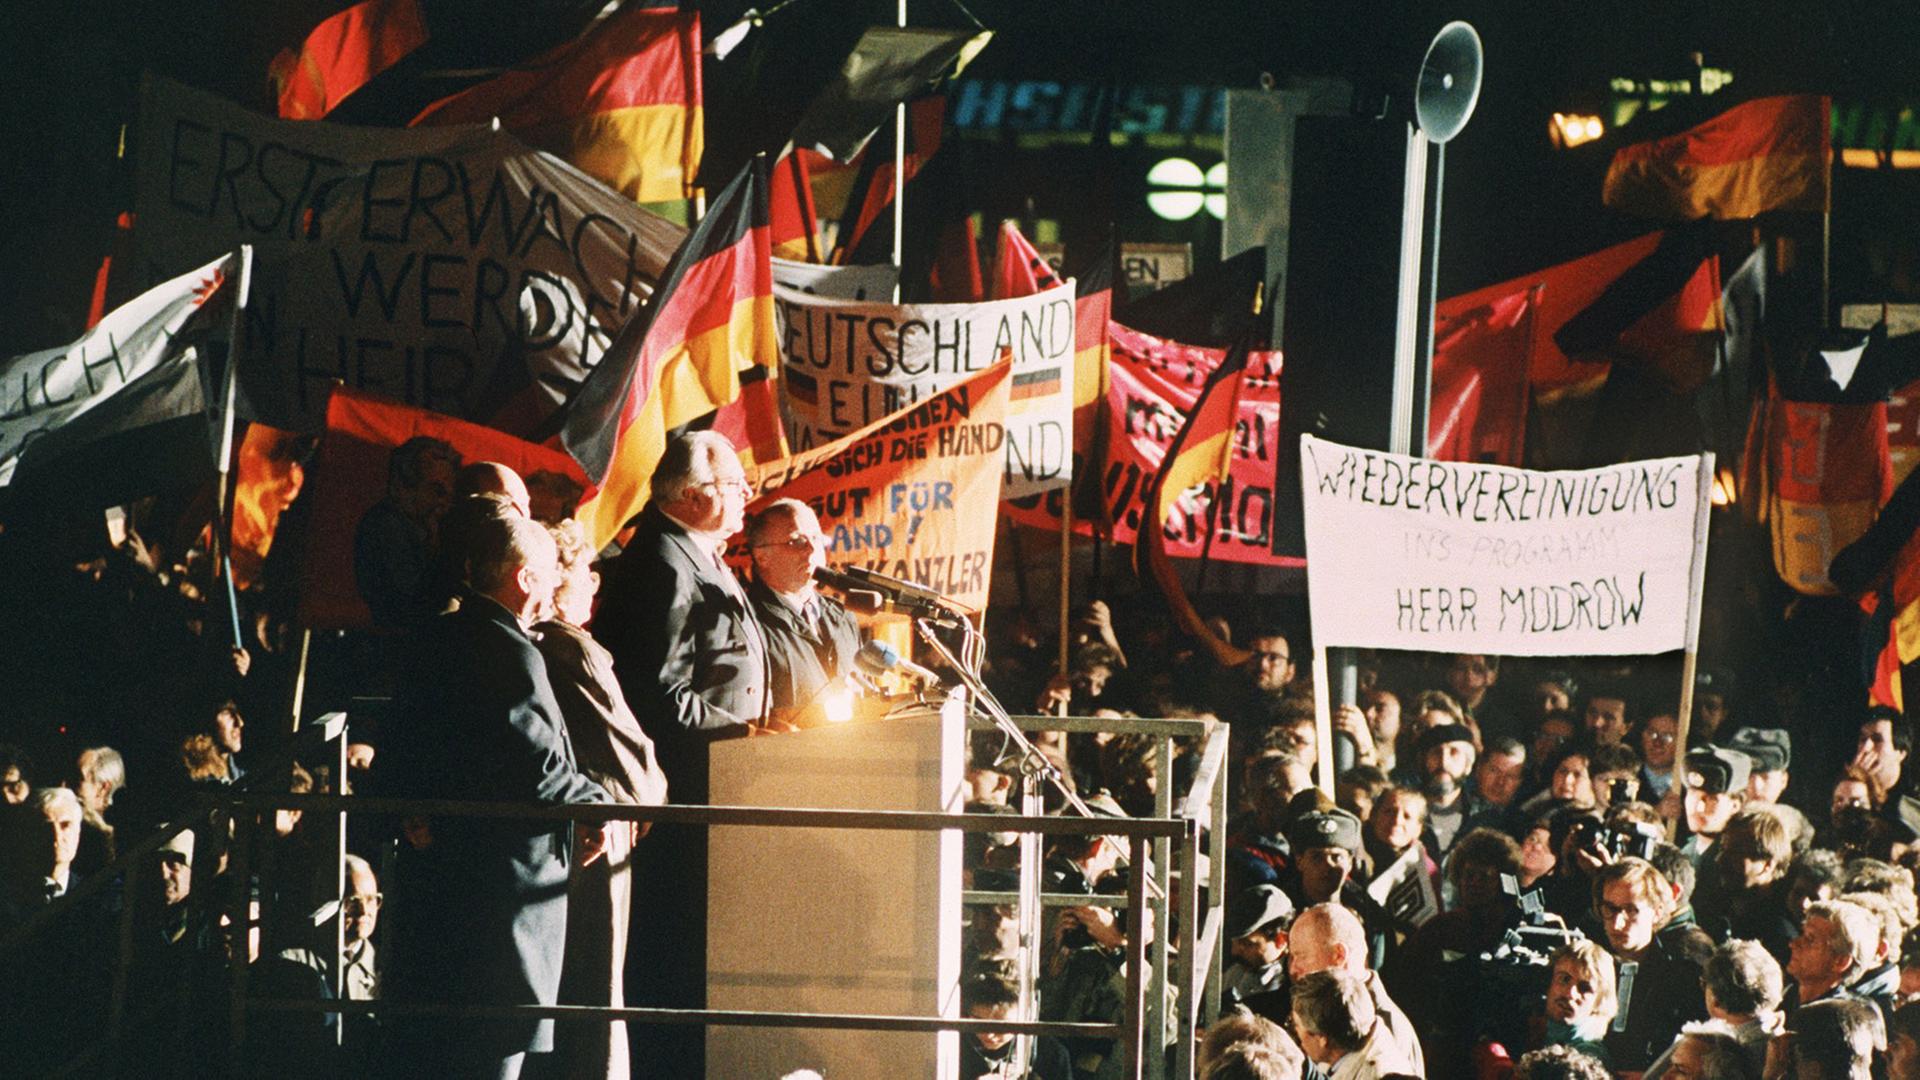 Bundeskanzler Helmut Kohl spricht am Abend des 19. Dezember 1989 zu der riesigen Menschenmenge, die sich anlässlich seines Besuches eingefunden hat. Kohl hielt sich zu einem zweitägigen Besuch in der sächsischen Stadt auf und wurde an beiden Tagen von der DDR-Bevölkerung stürmisch gefeiert.